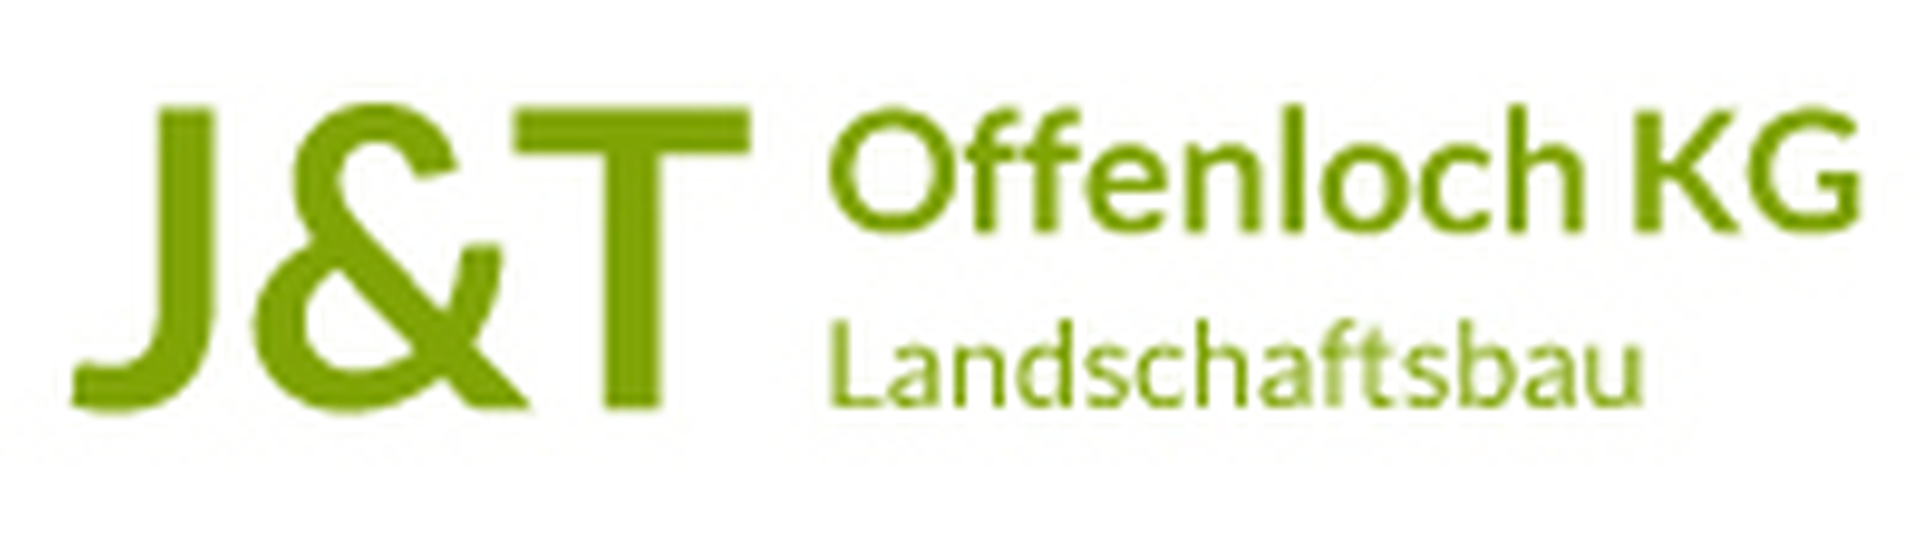 Logo der Firma J & T Offenloch KG aus Mannheim